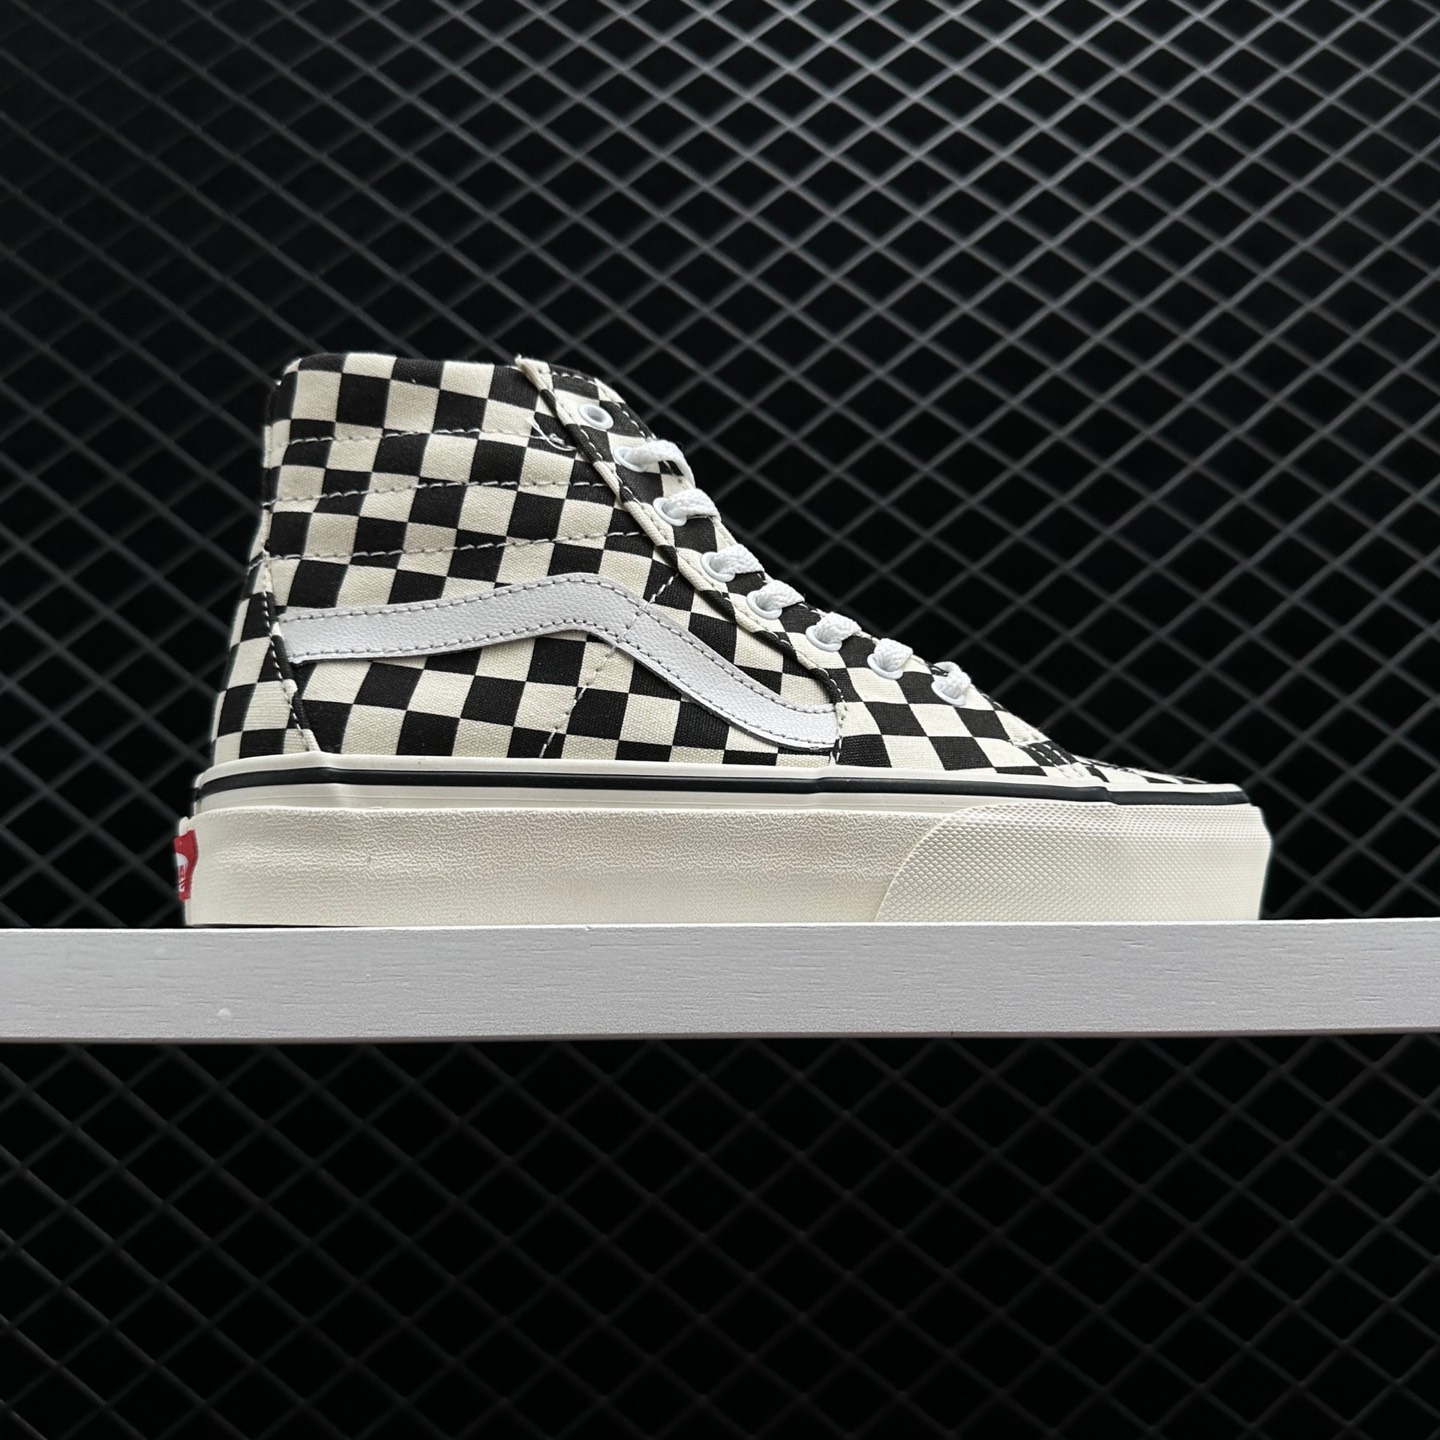 Vans SK8-HI Tapered Checkerboard Black Sneakers - VN0A4U165GU